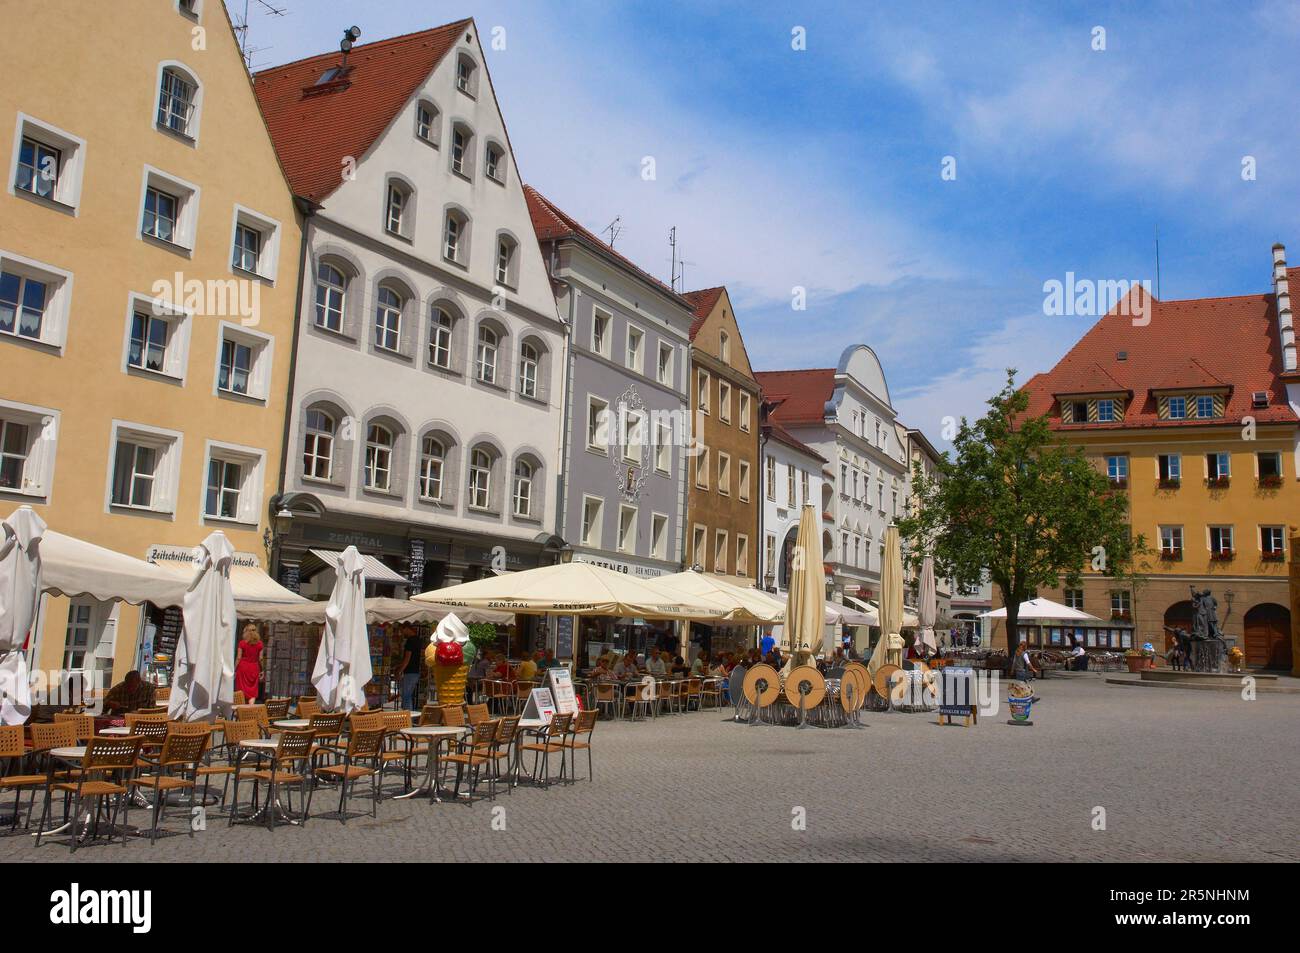 Amberg, Market Place, Market Square, Upper Palatinate, Bavaria Germany  Stock Photo - Alamy